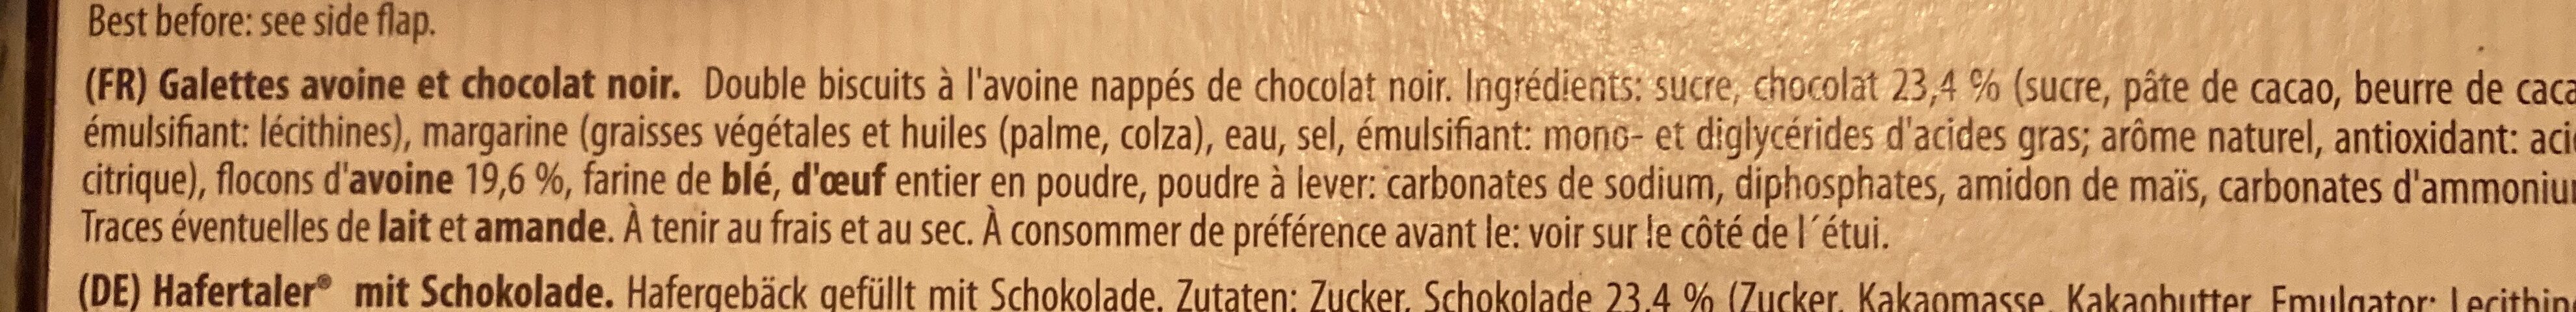 Double chocolate crisps - Ingrédients